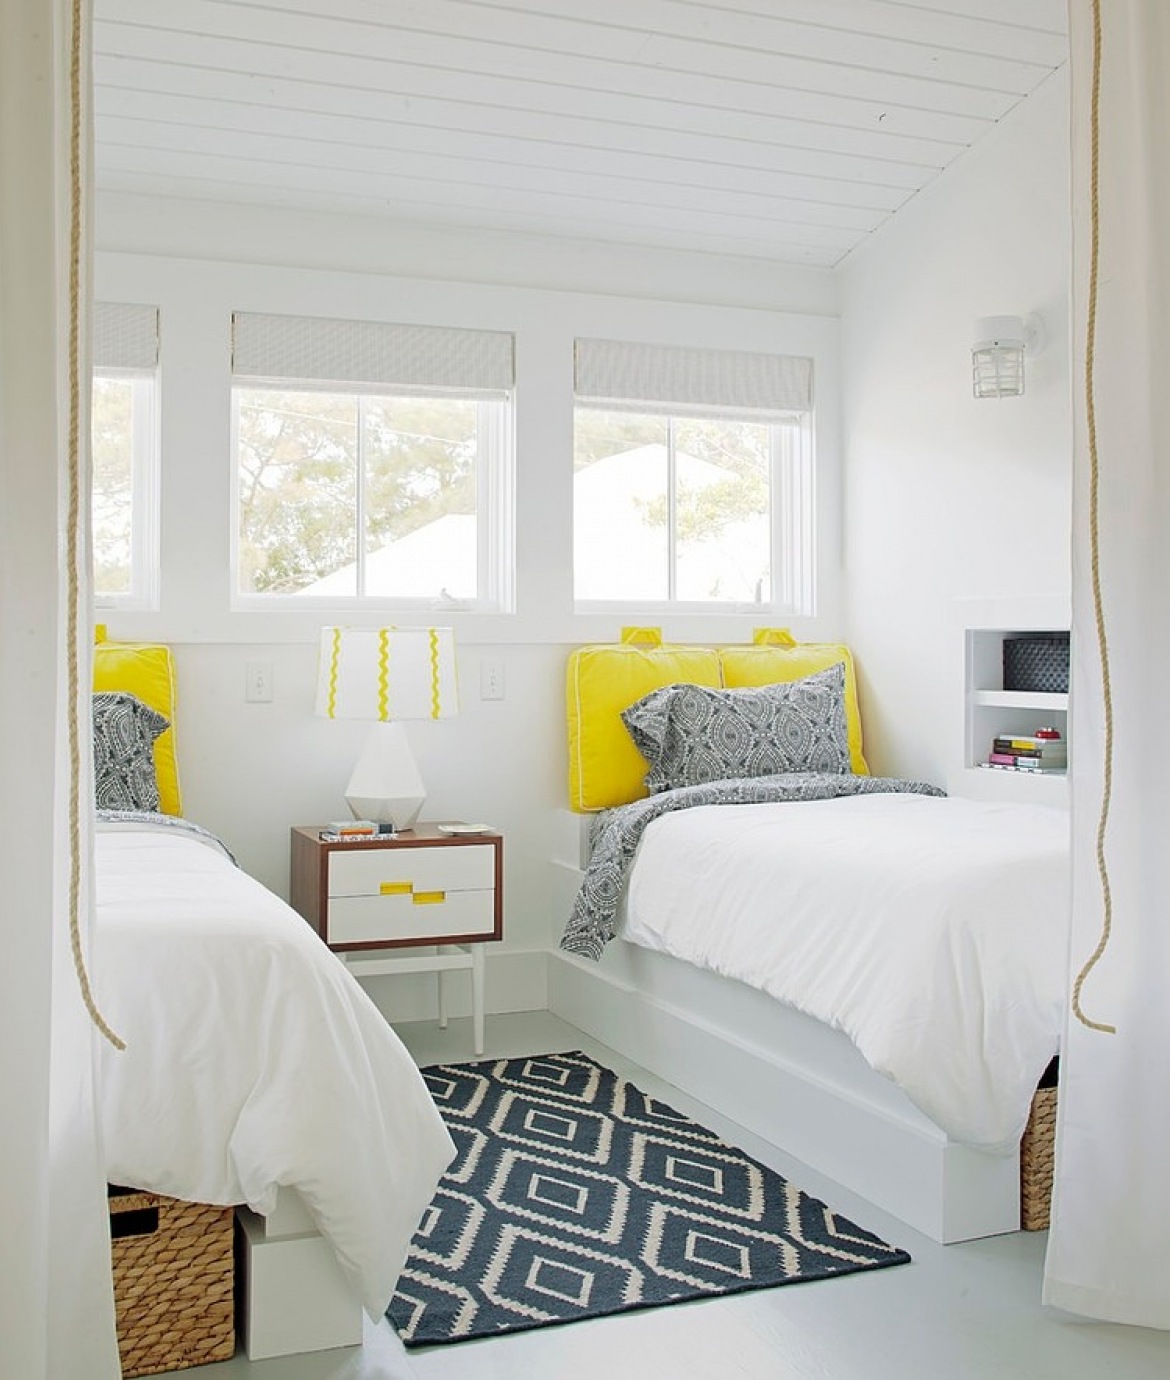 Biała sypialnia zszaro-białym dywanem w geometryczne wzory i żółtymi zagłówkami przy łóżku (23804)